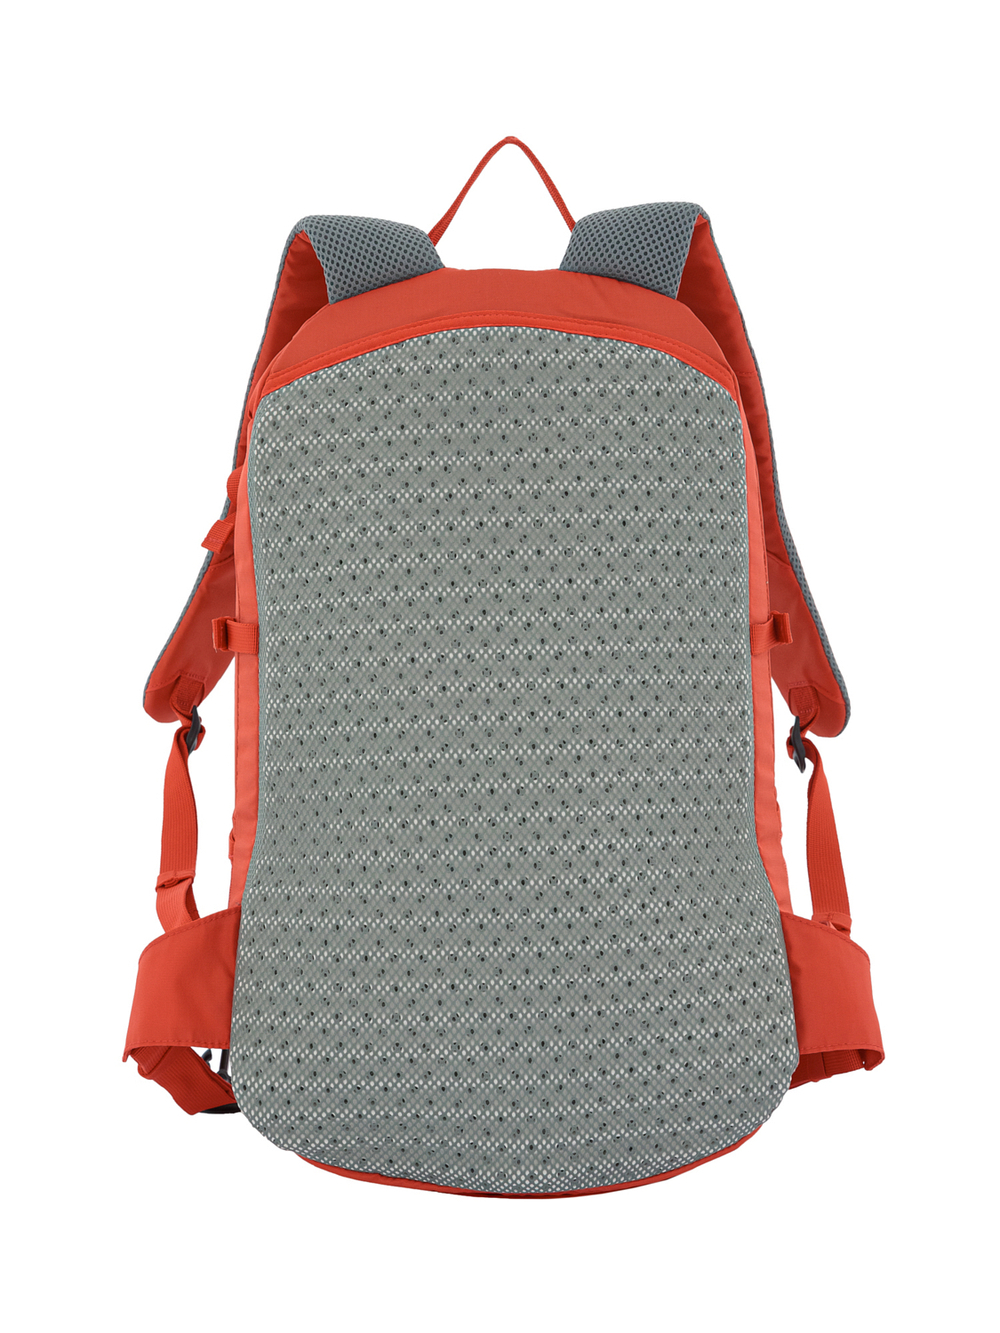 Рюкзак Ternua backpacks Sbt 25L Red (б/р)